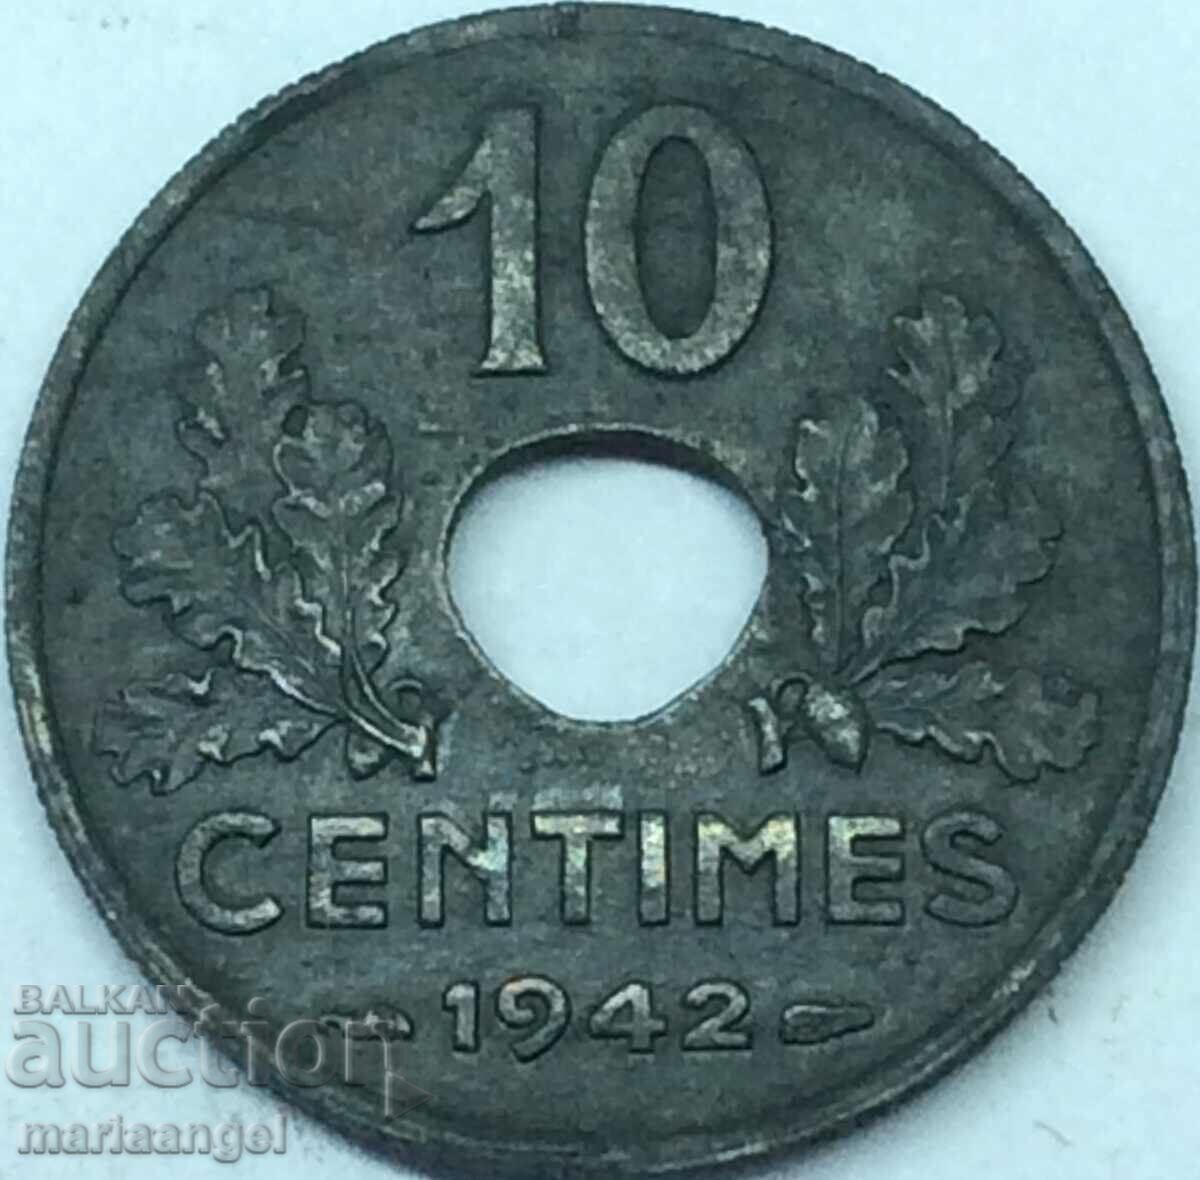 France 1942 10 centimes zinc